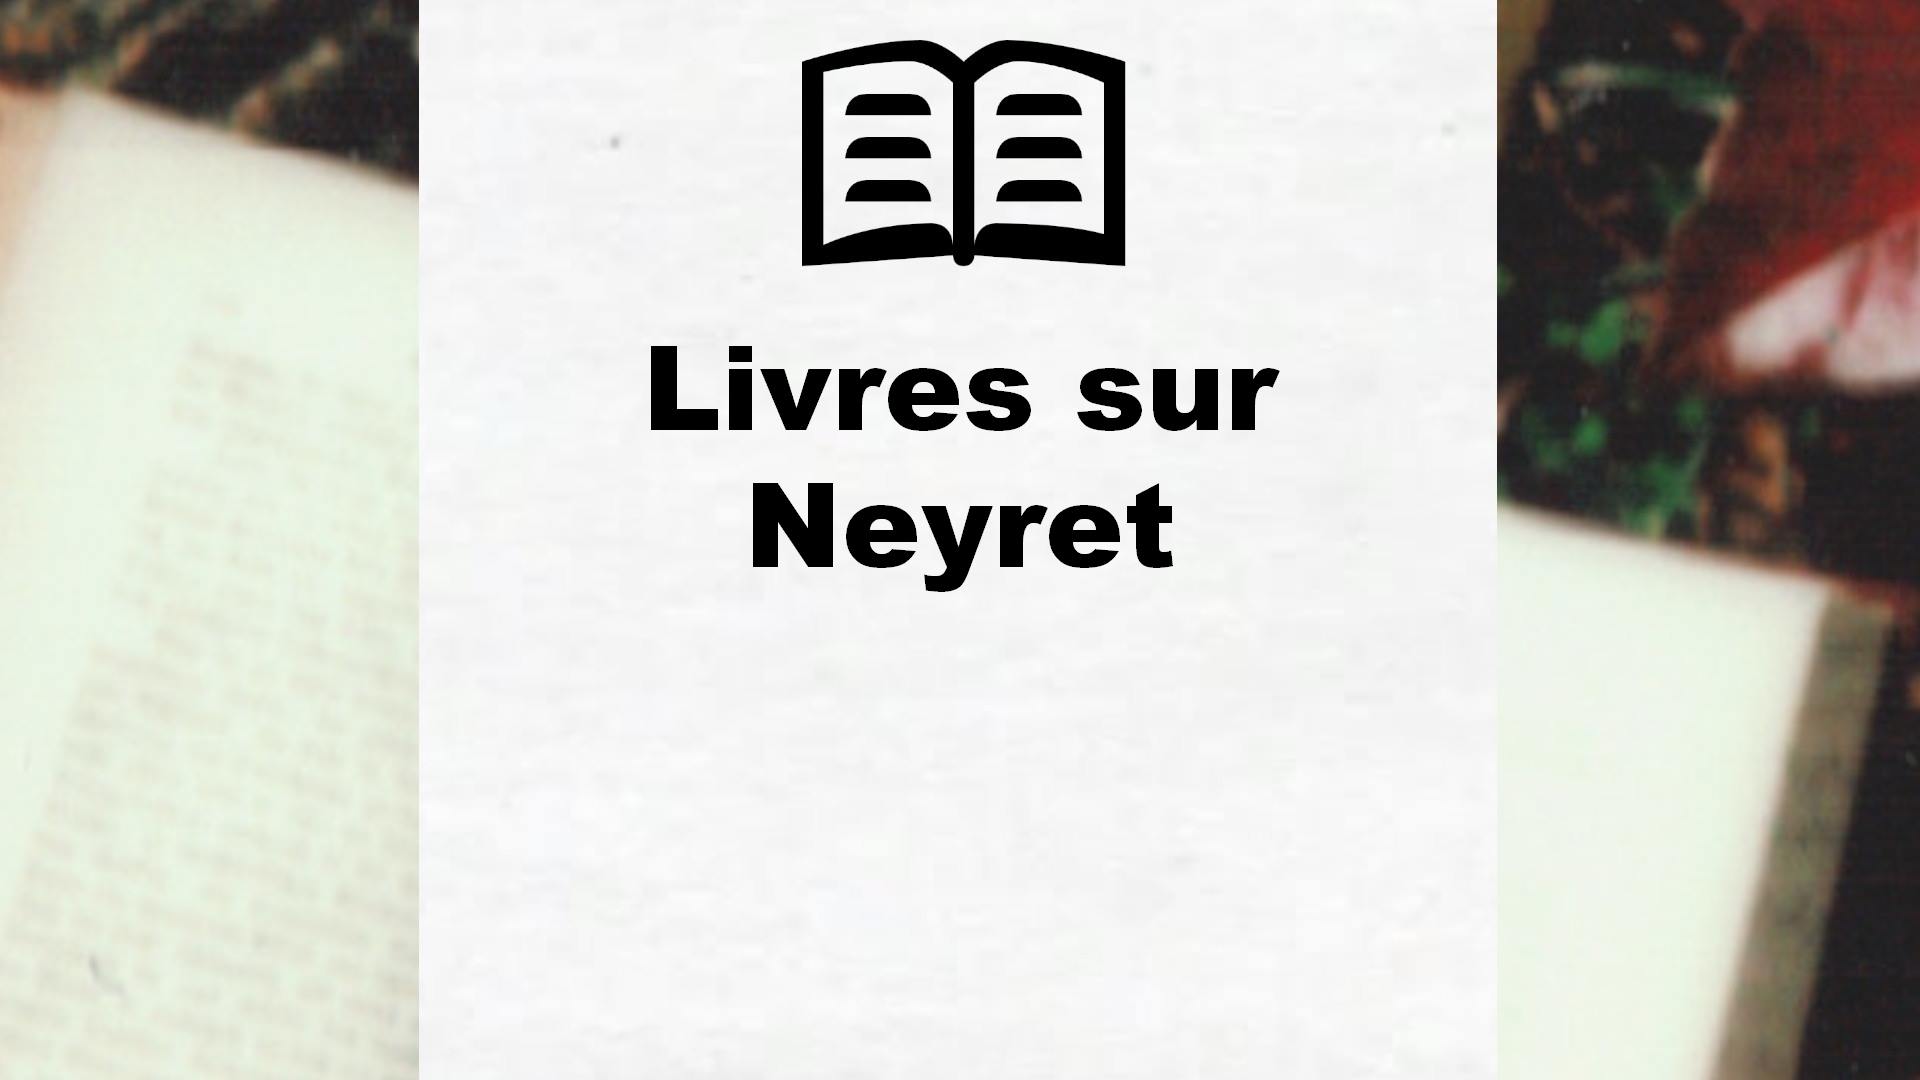 Livres sur Neyret